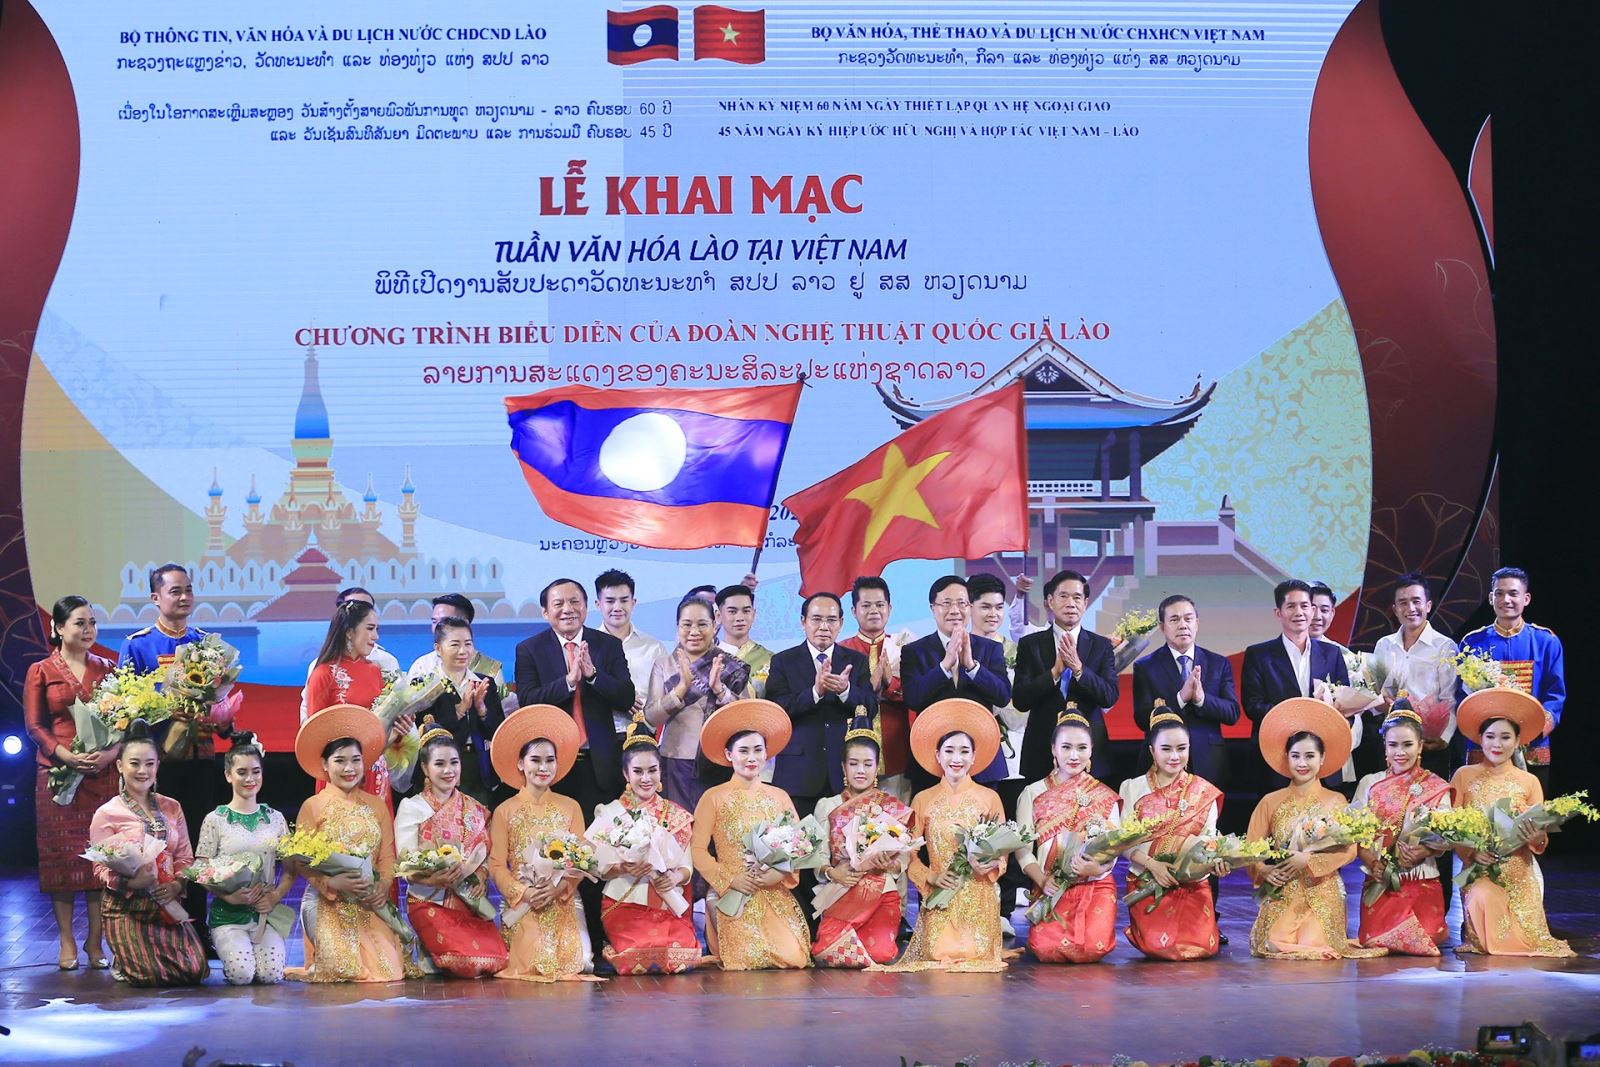  “Tuần Văn hóa Lào tại Việt Nam”: Ngợi ca truyền thống hữu nghị, đoàn kết đặc biệt, gắn bó keo sơn  Việt Nam - Lào